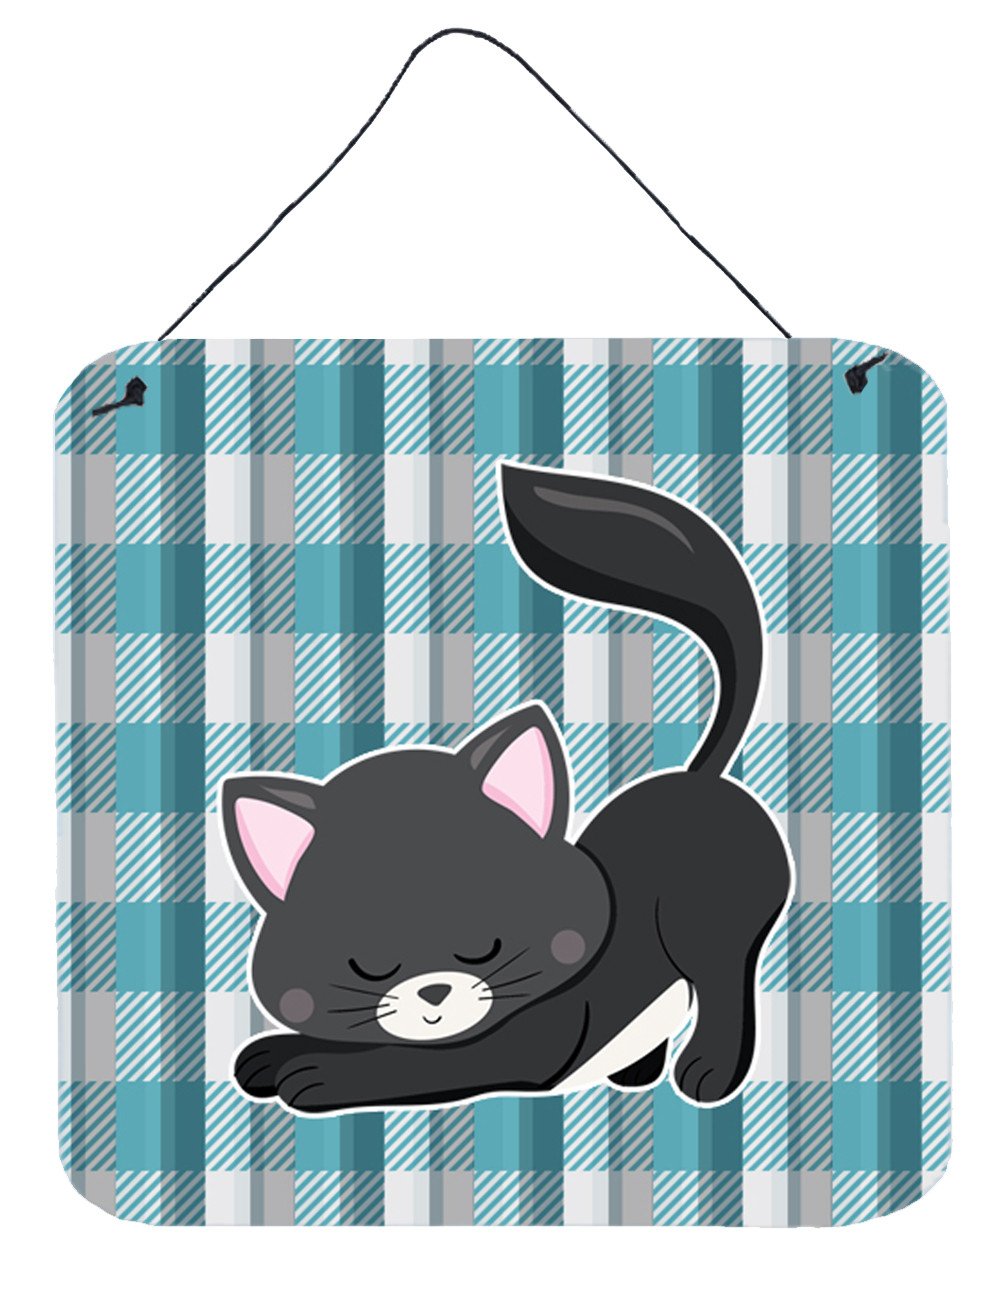 Little Black Cat Kitten Wall or Door Hanging Prints BB6881DS66 by Caroline's Treasures